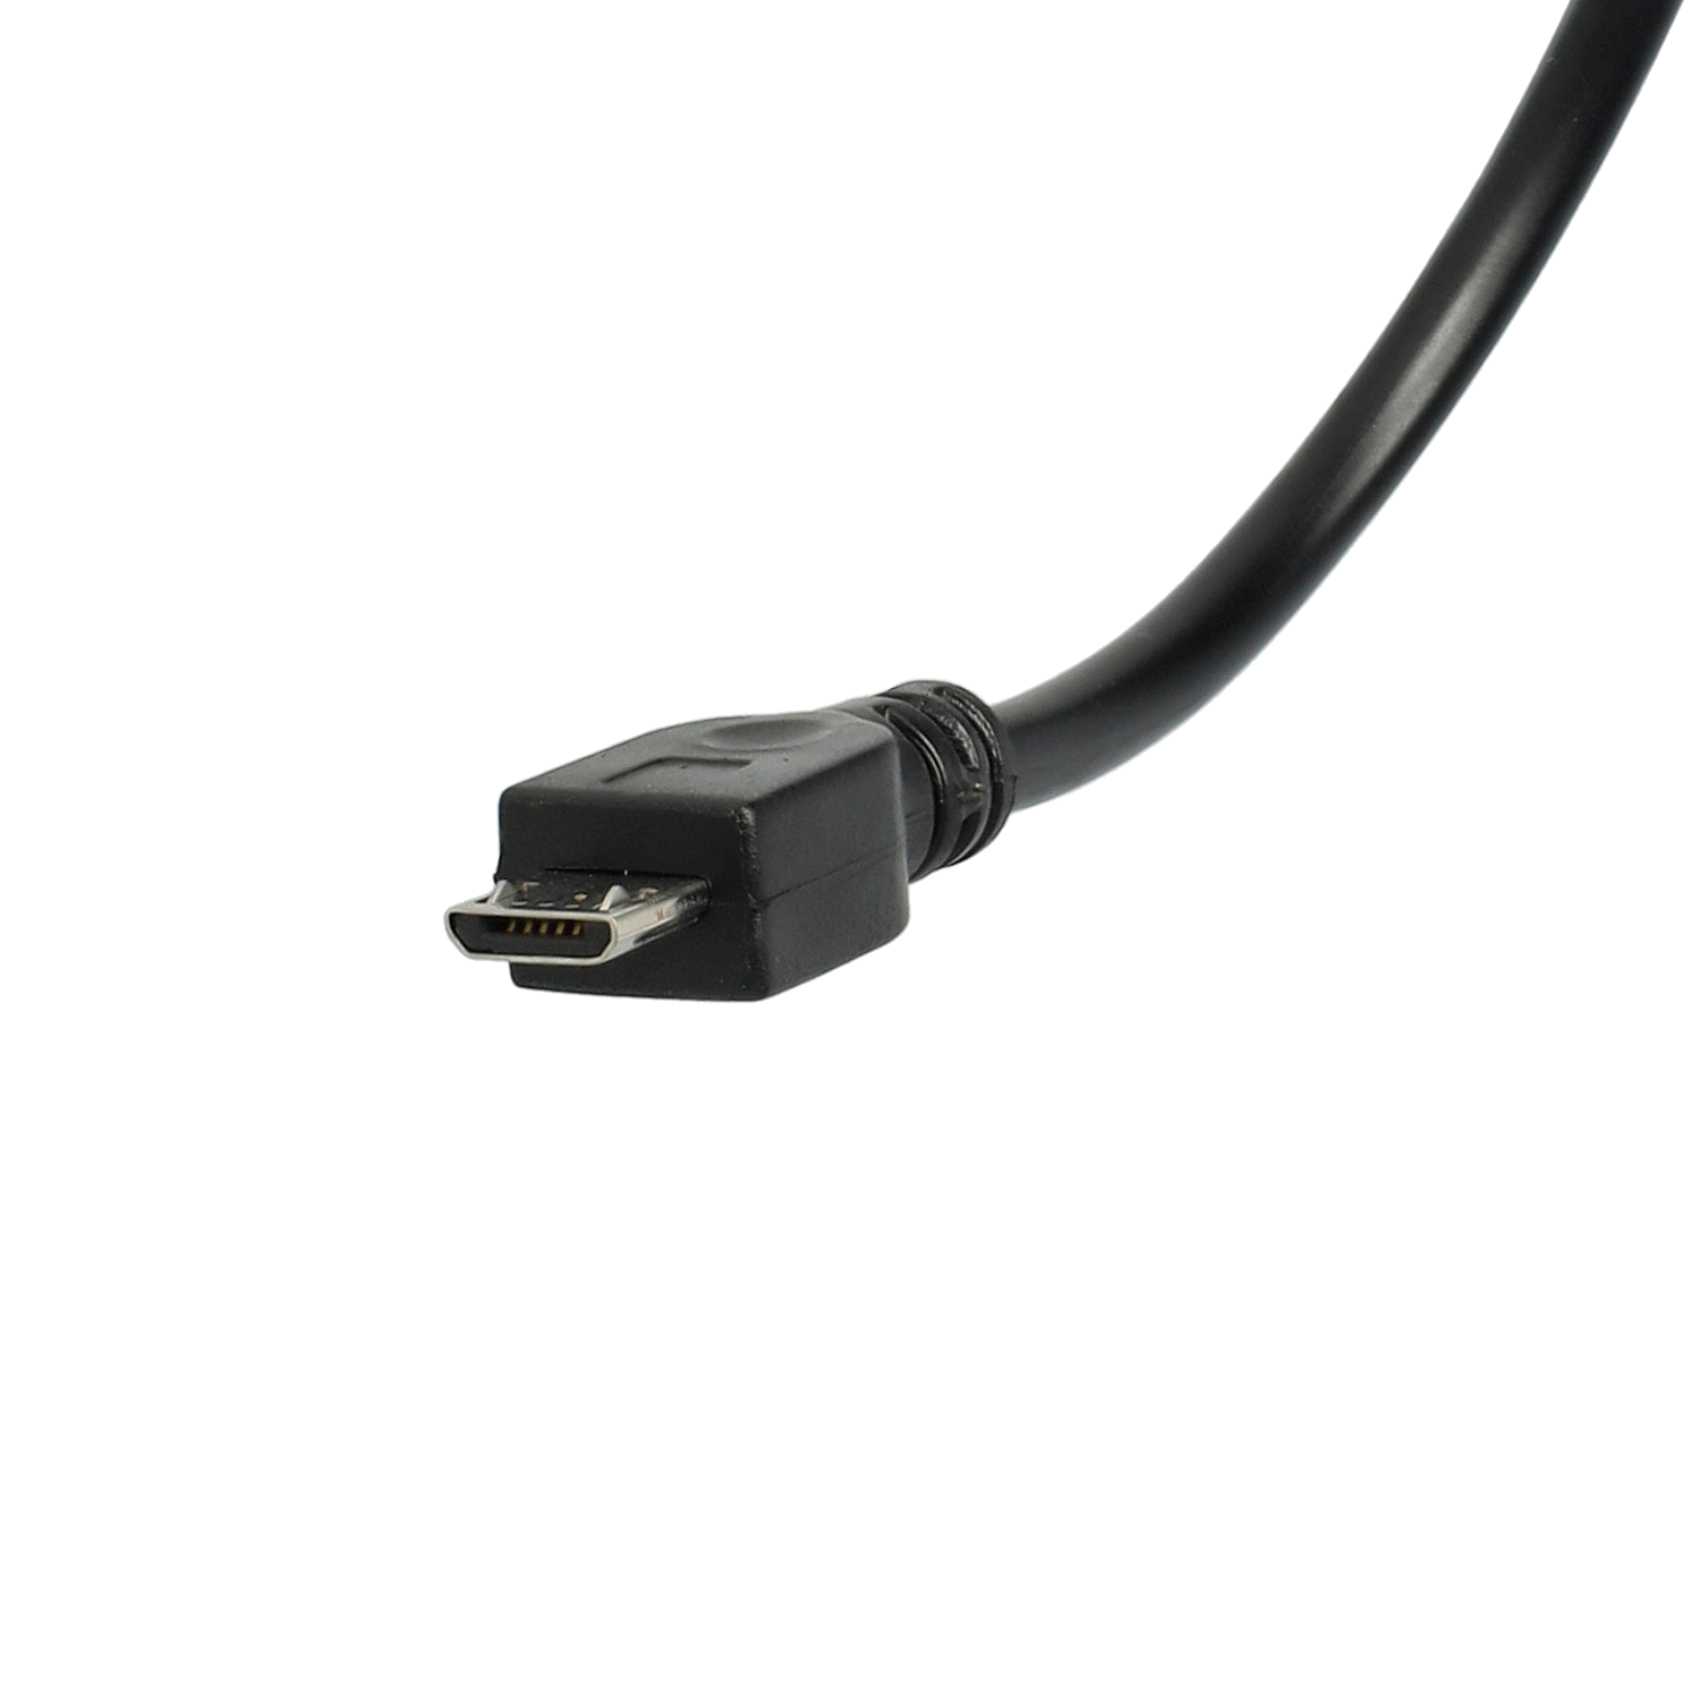 Adapter OTG Micro-USB auf USB (weiblich) für Smartphone, Tablet, Laptop, Notebook, PC